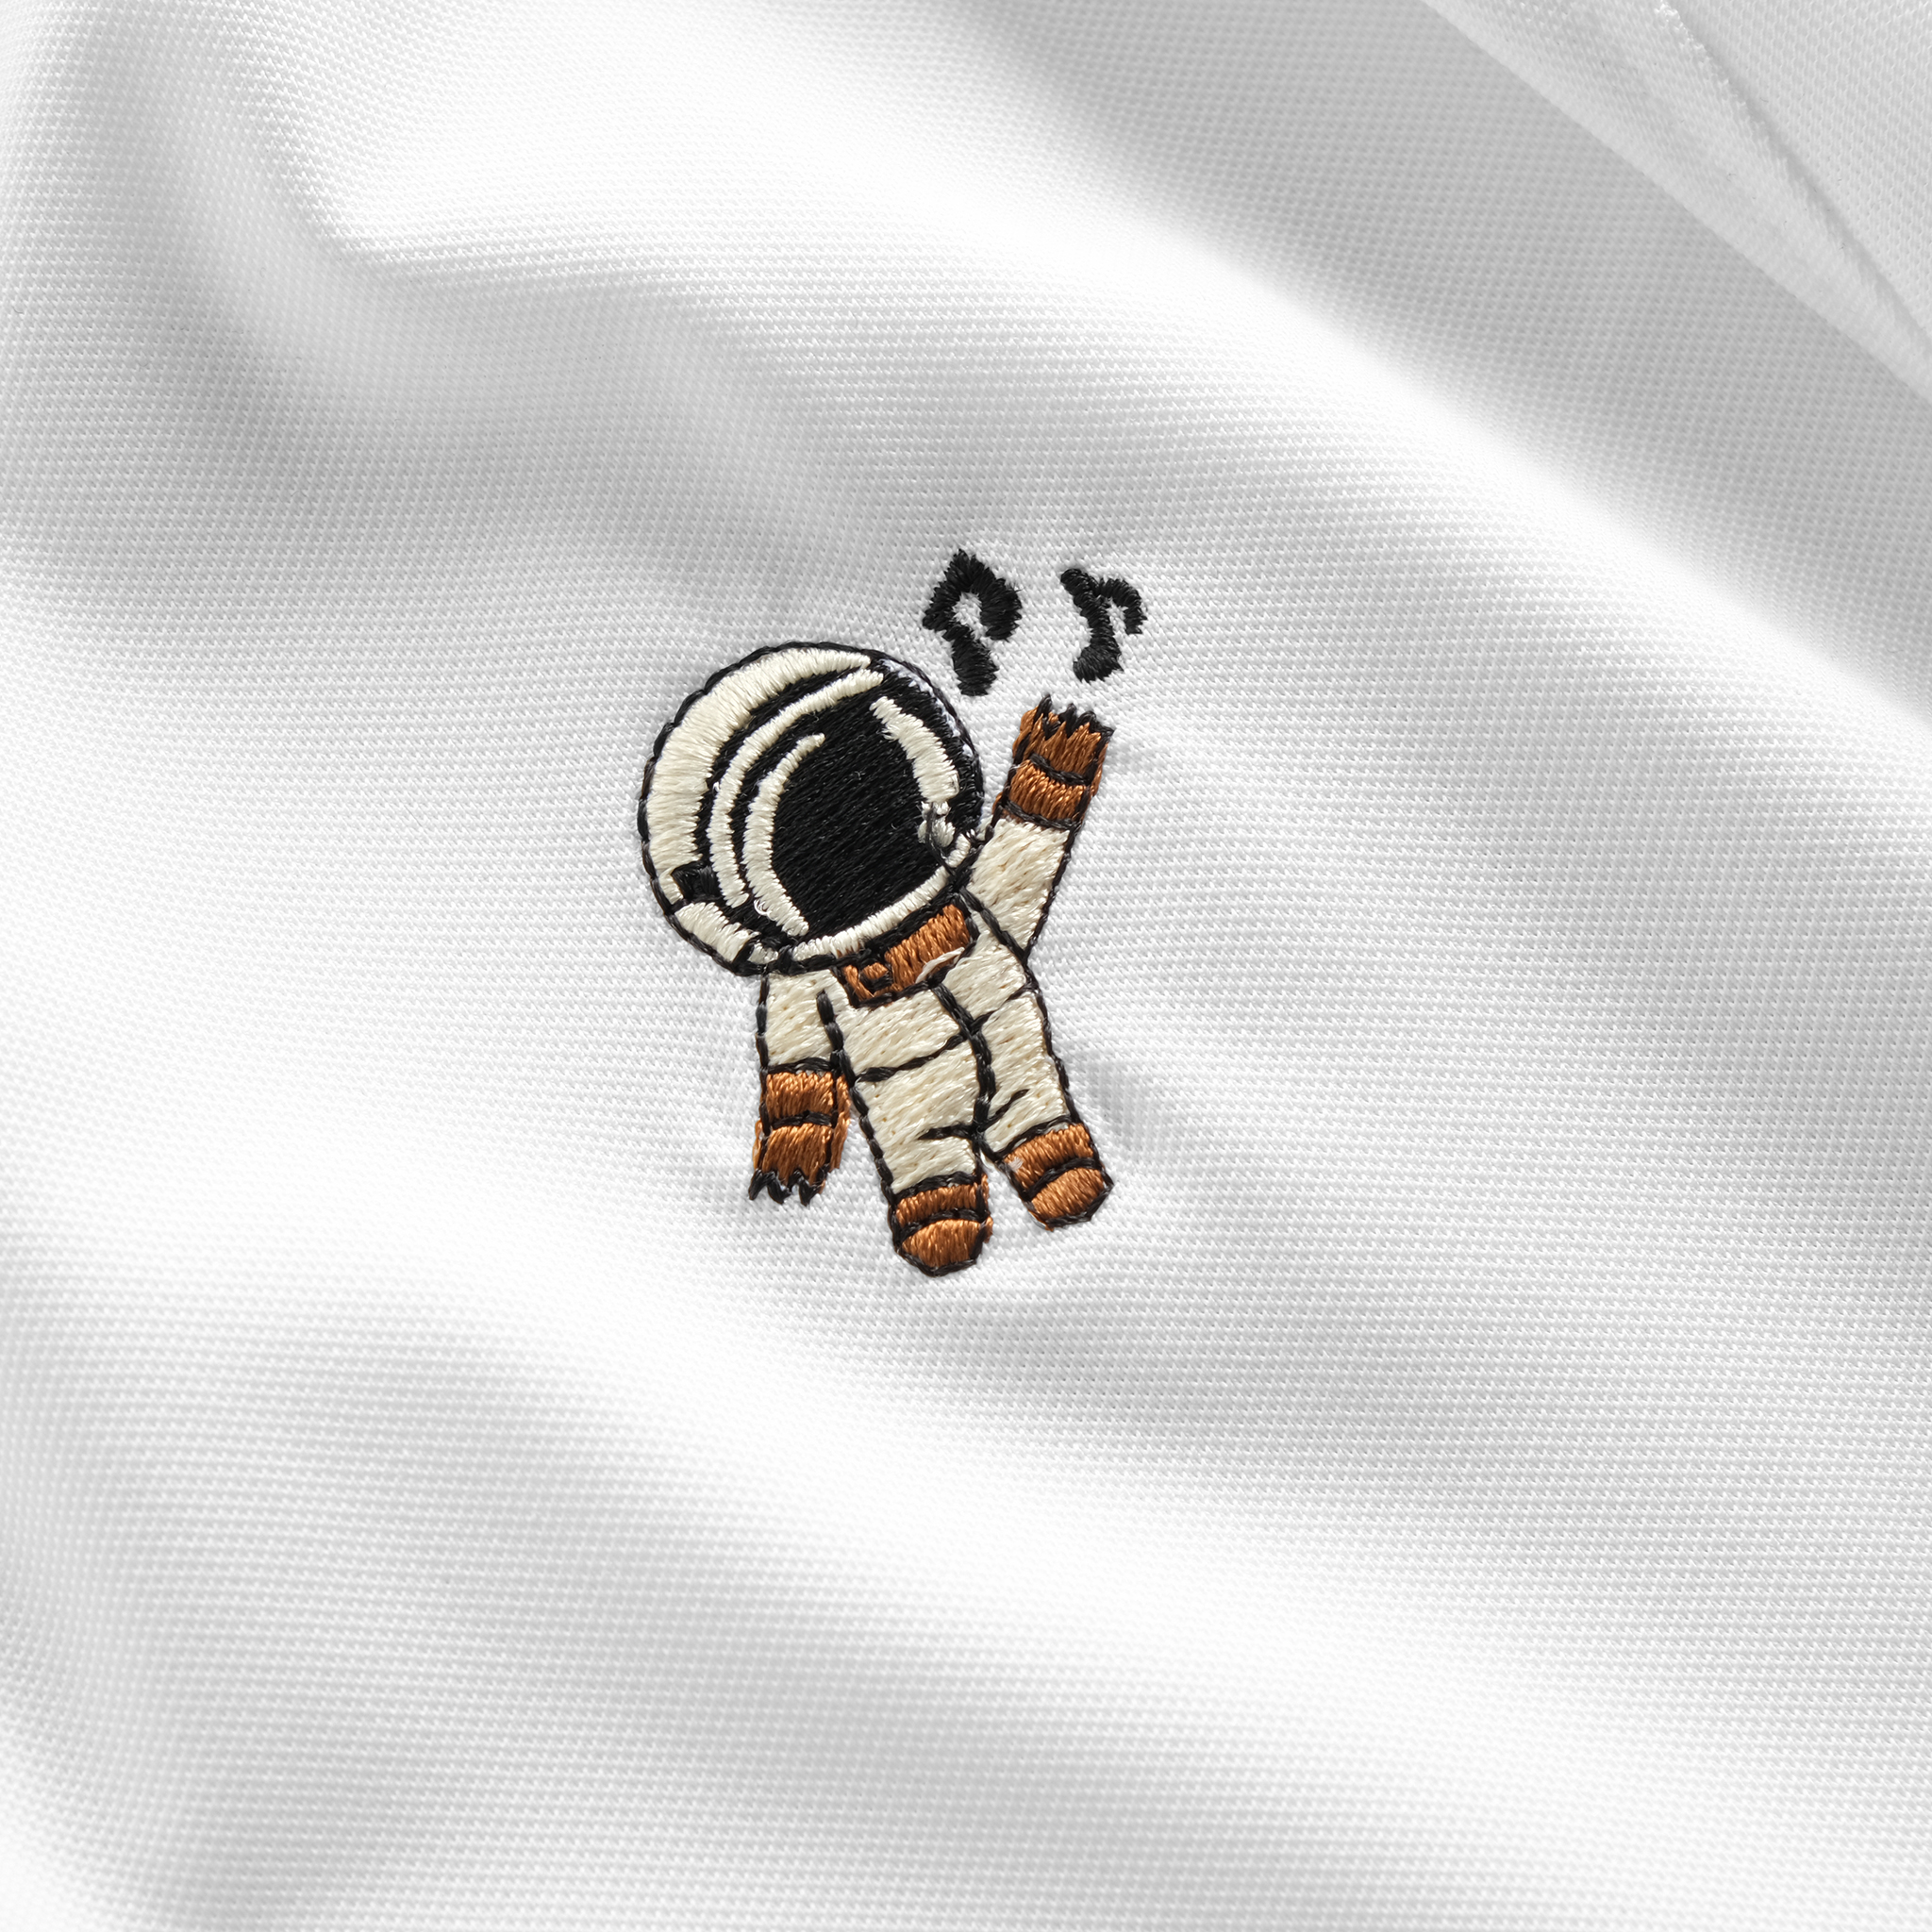 Áo Polo nam/ Áo thun nam cổ bẻ - MOUSE UNI Astronaut - Vải cá sấu lạnh xuất khẩu - Form chuẩn, sang trọng, thanh lịch, thời thượng